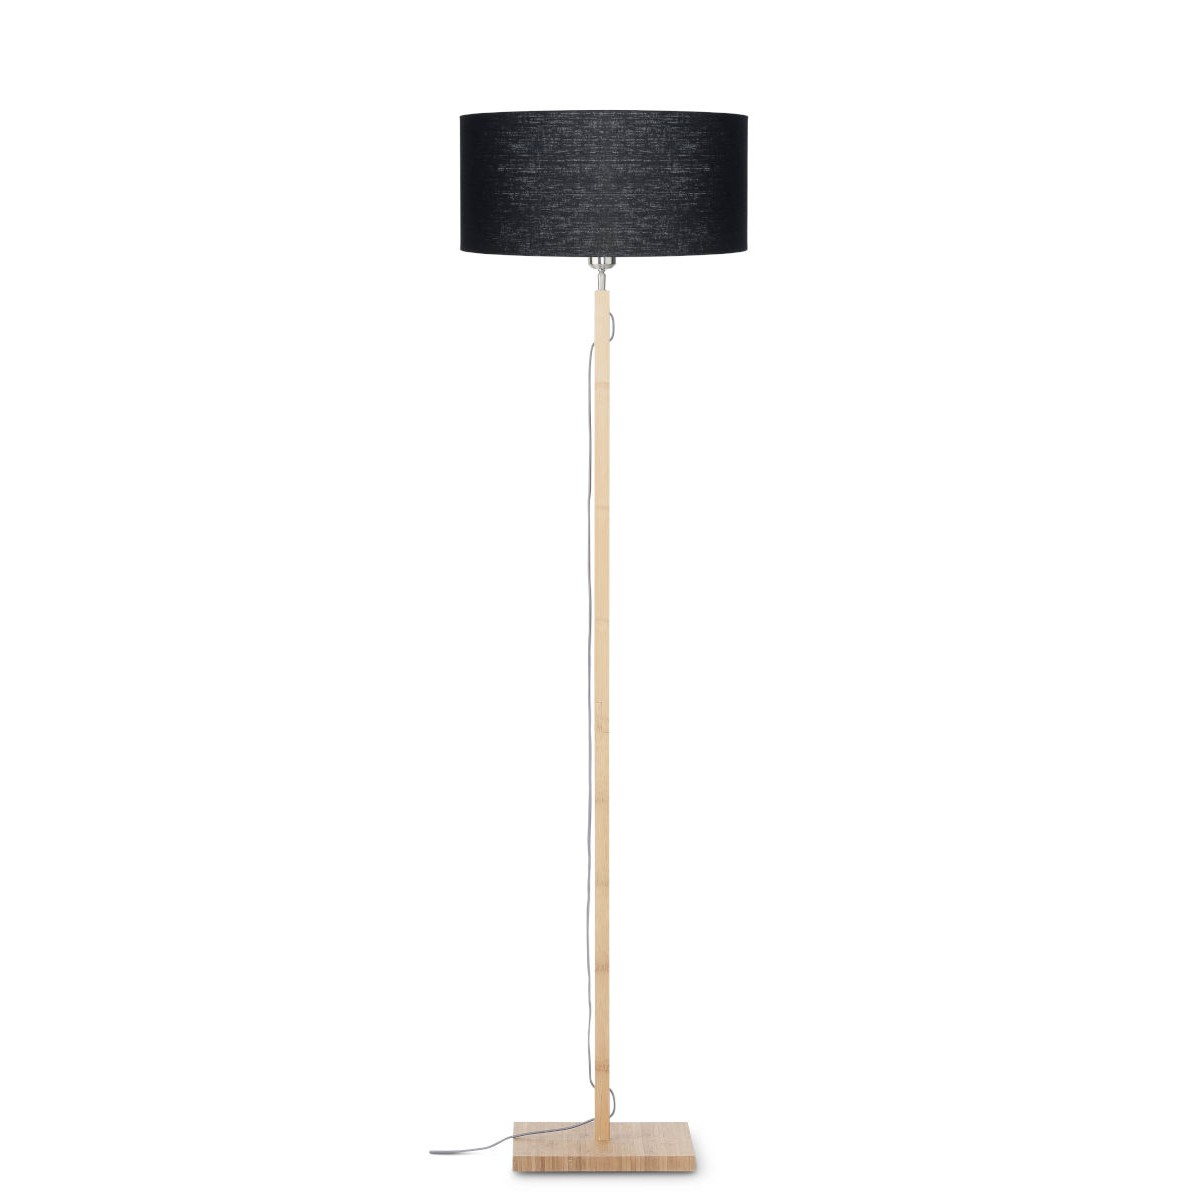 Bambus Stehlampe - Lampenschirm Leinen 6554 (natürlich, Story schwarz) FUJI AMP umweltfreundliche und